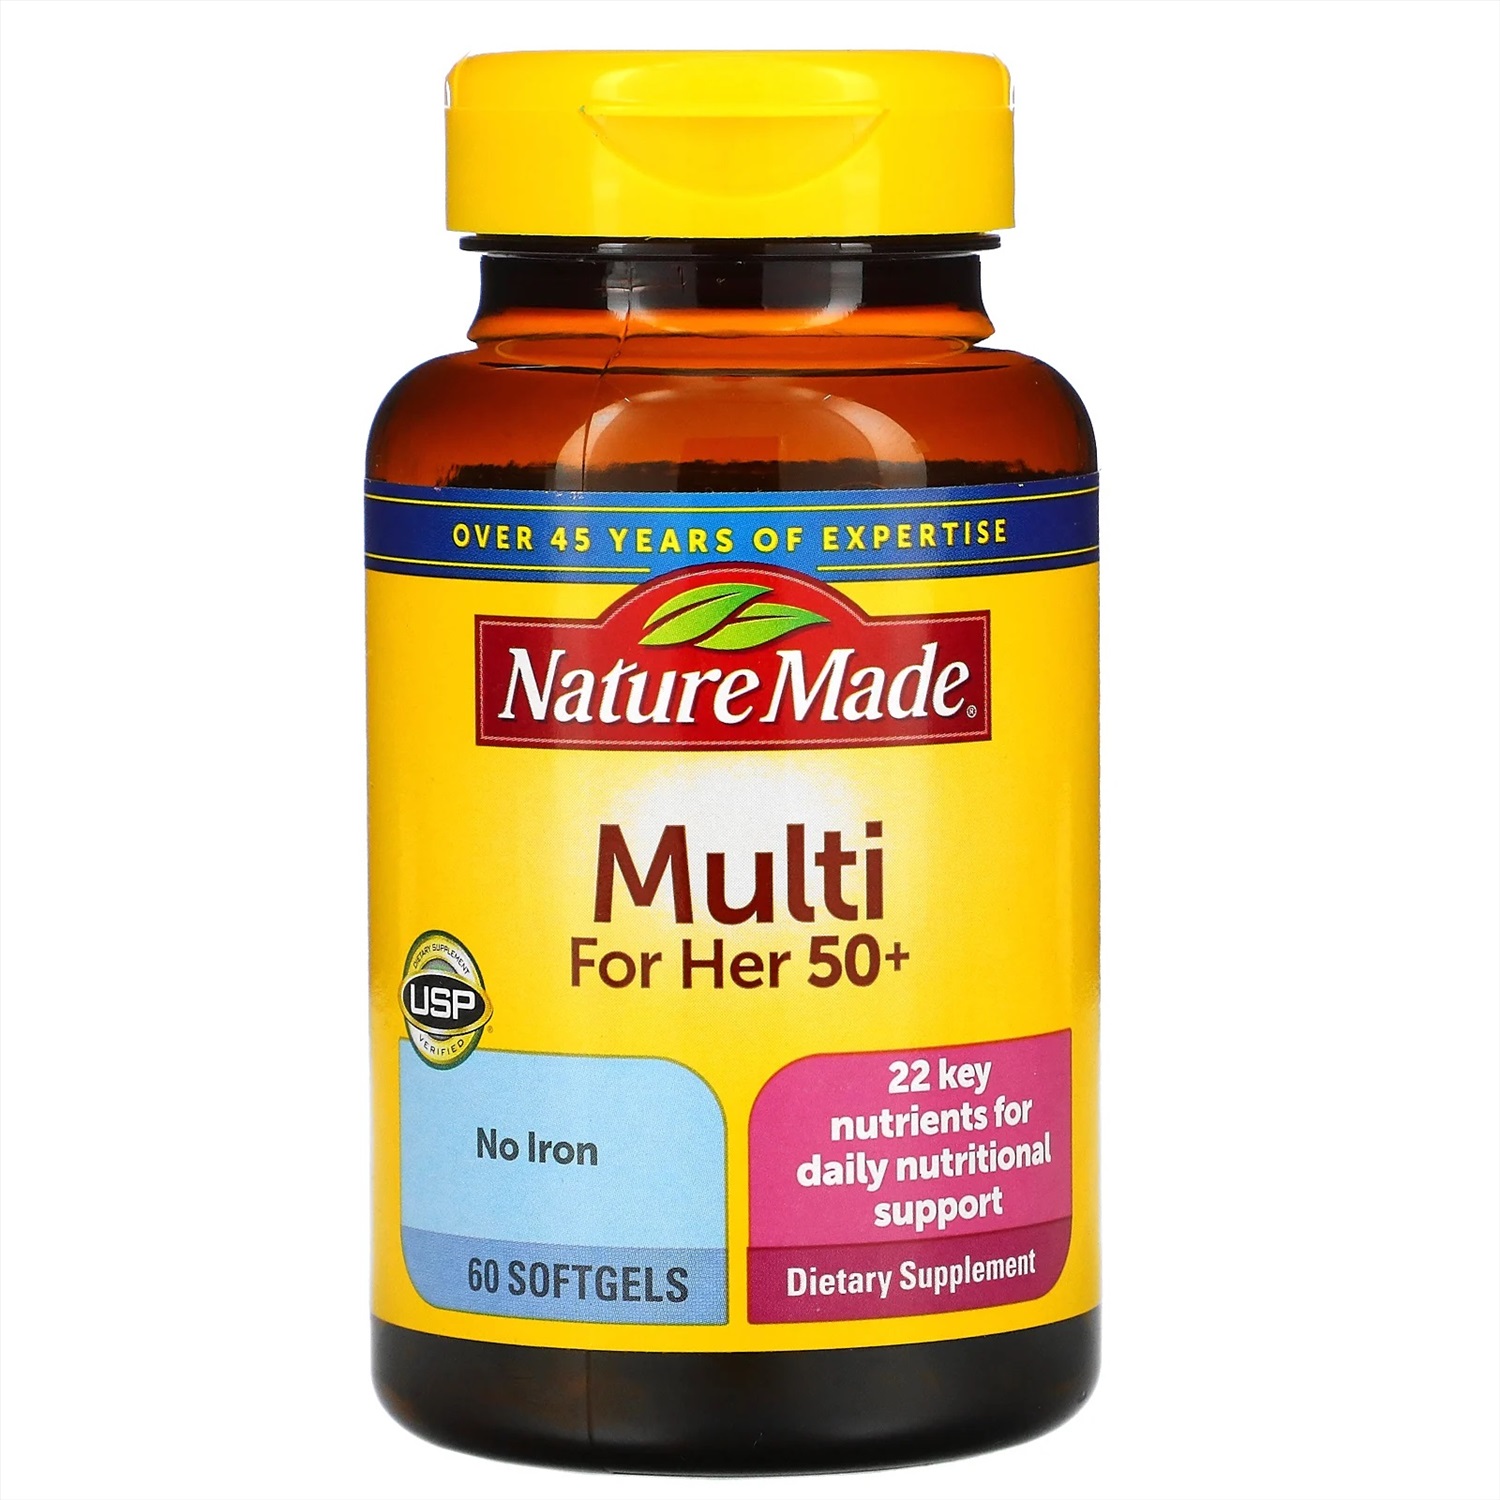 Витамин отзывы покупателей и врачей. Мультивитамины nature made Multi. Витамины натура. Nature made, Multi для женщин 50+ отзывы. Витамины отзывы.